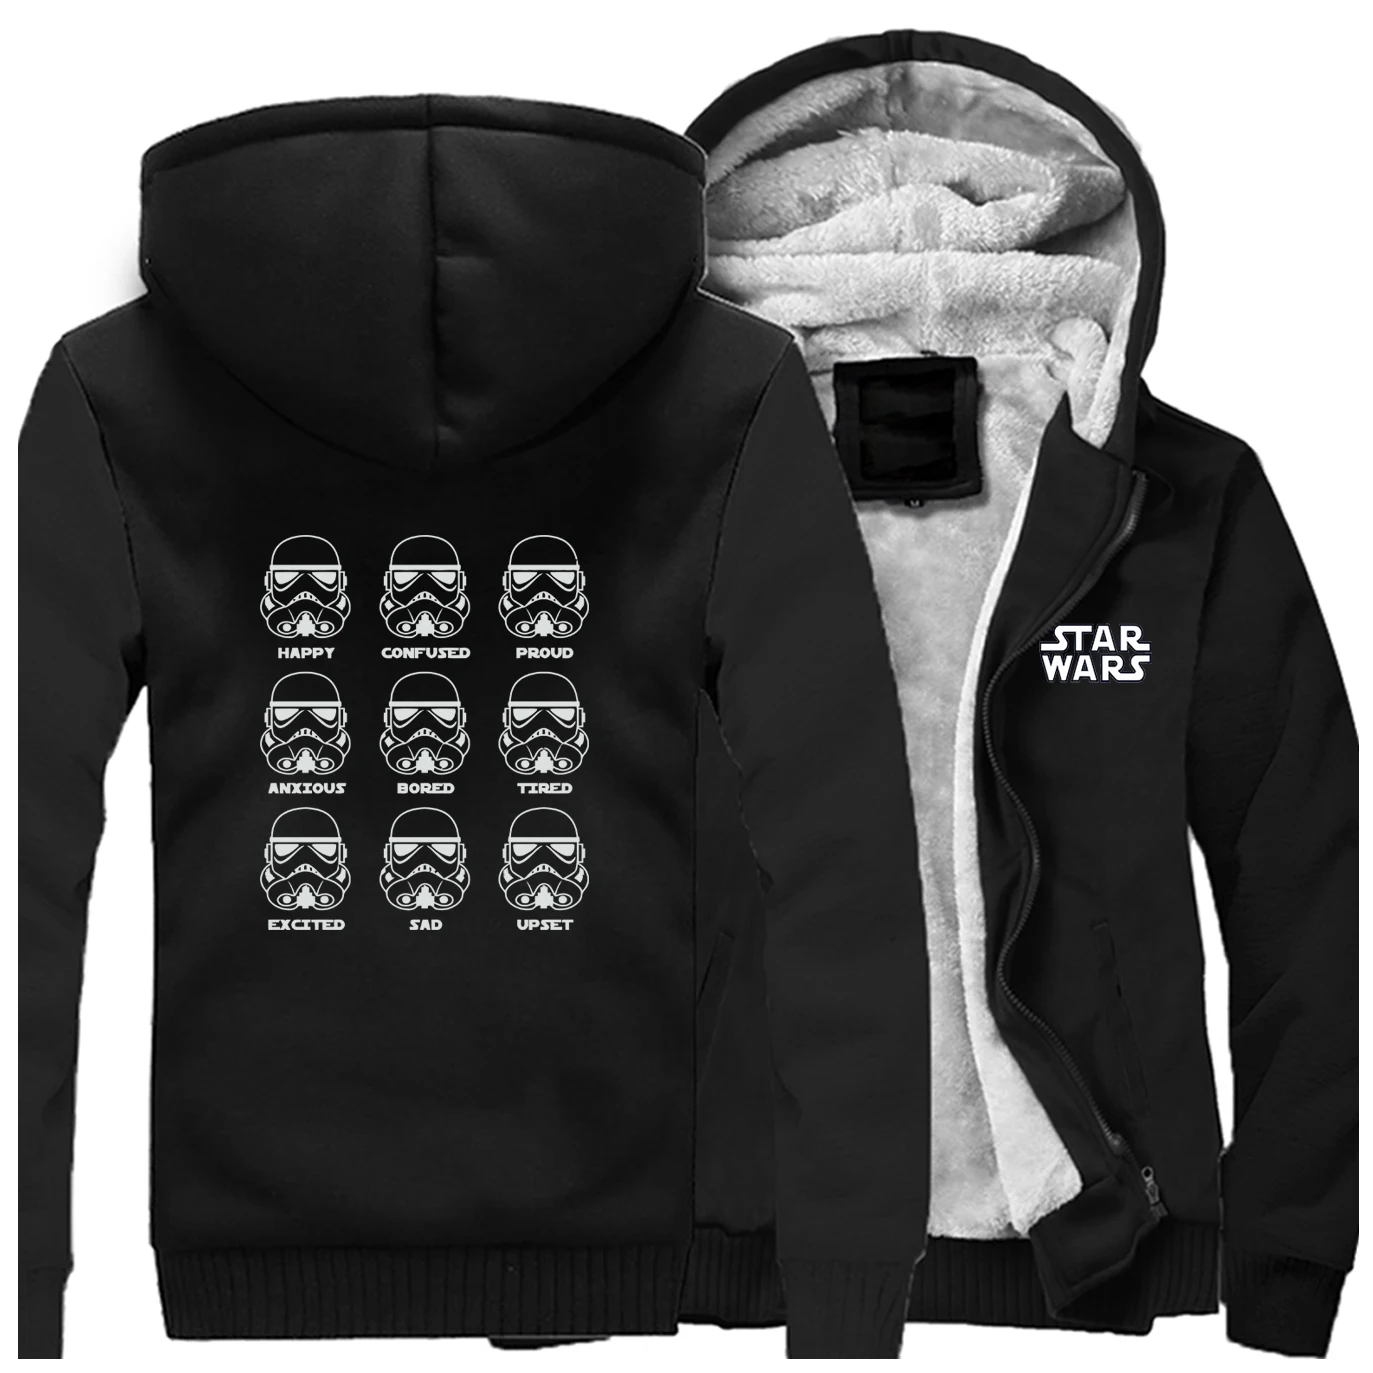 

Stormtrooper Warm Jacket Winter Fleece Men Thicken Jackets Emotions Star Wars Winter Raglan Zipper Sweatshirt Hoodie Sportswear